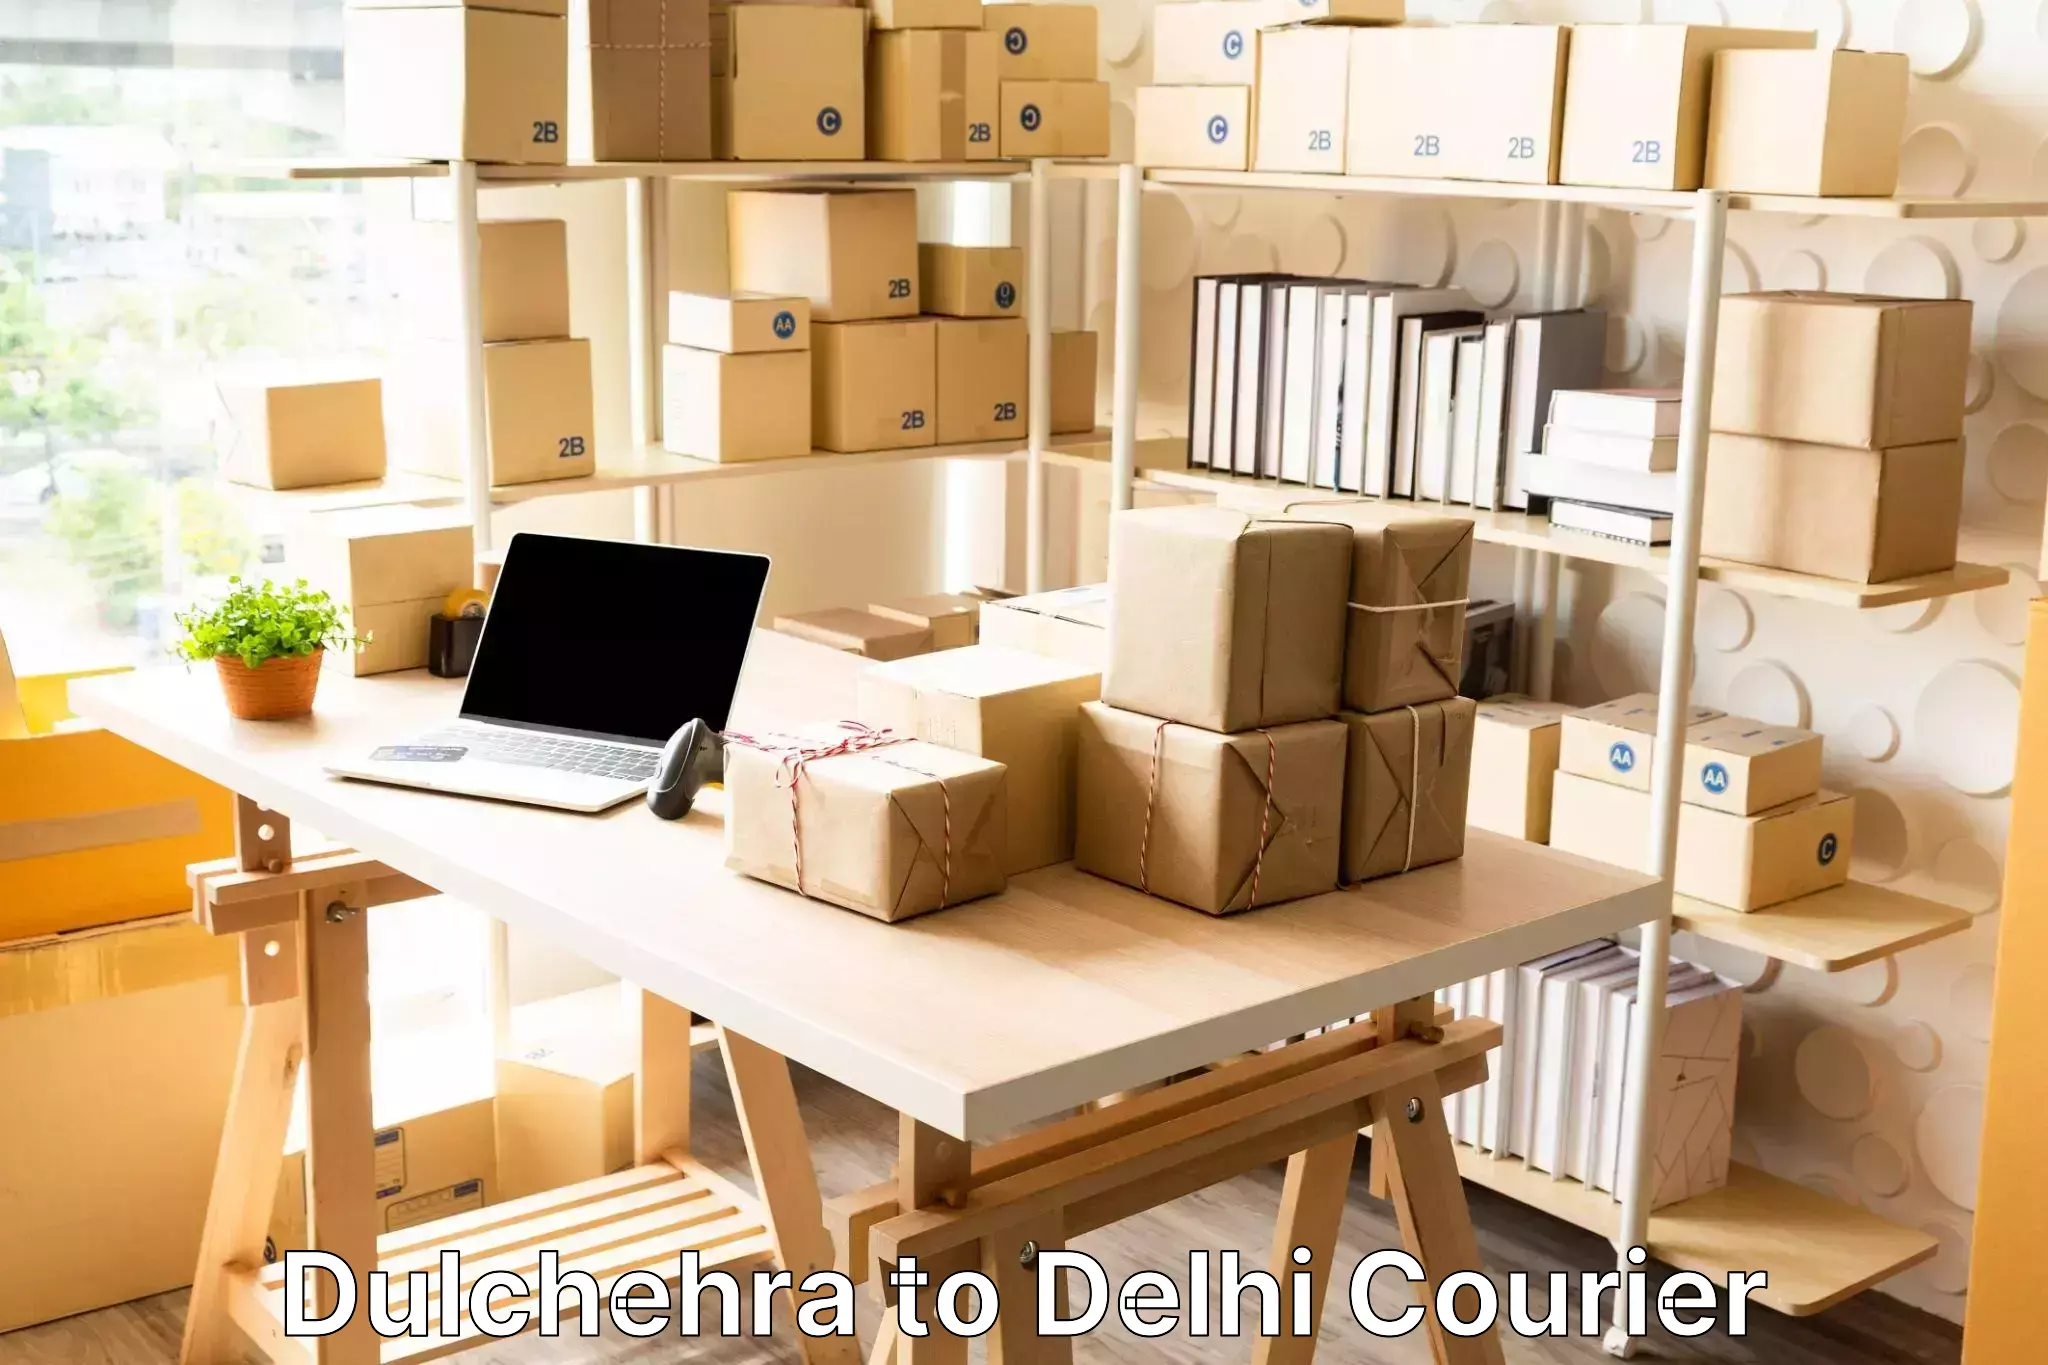 Luggage delivery estimate Dulchehra to Delhi